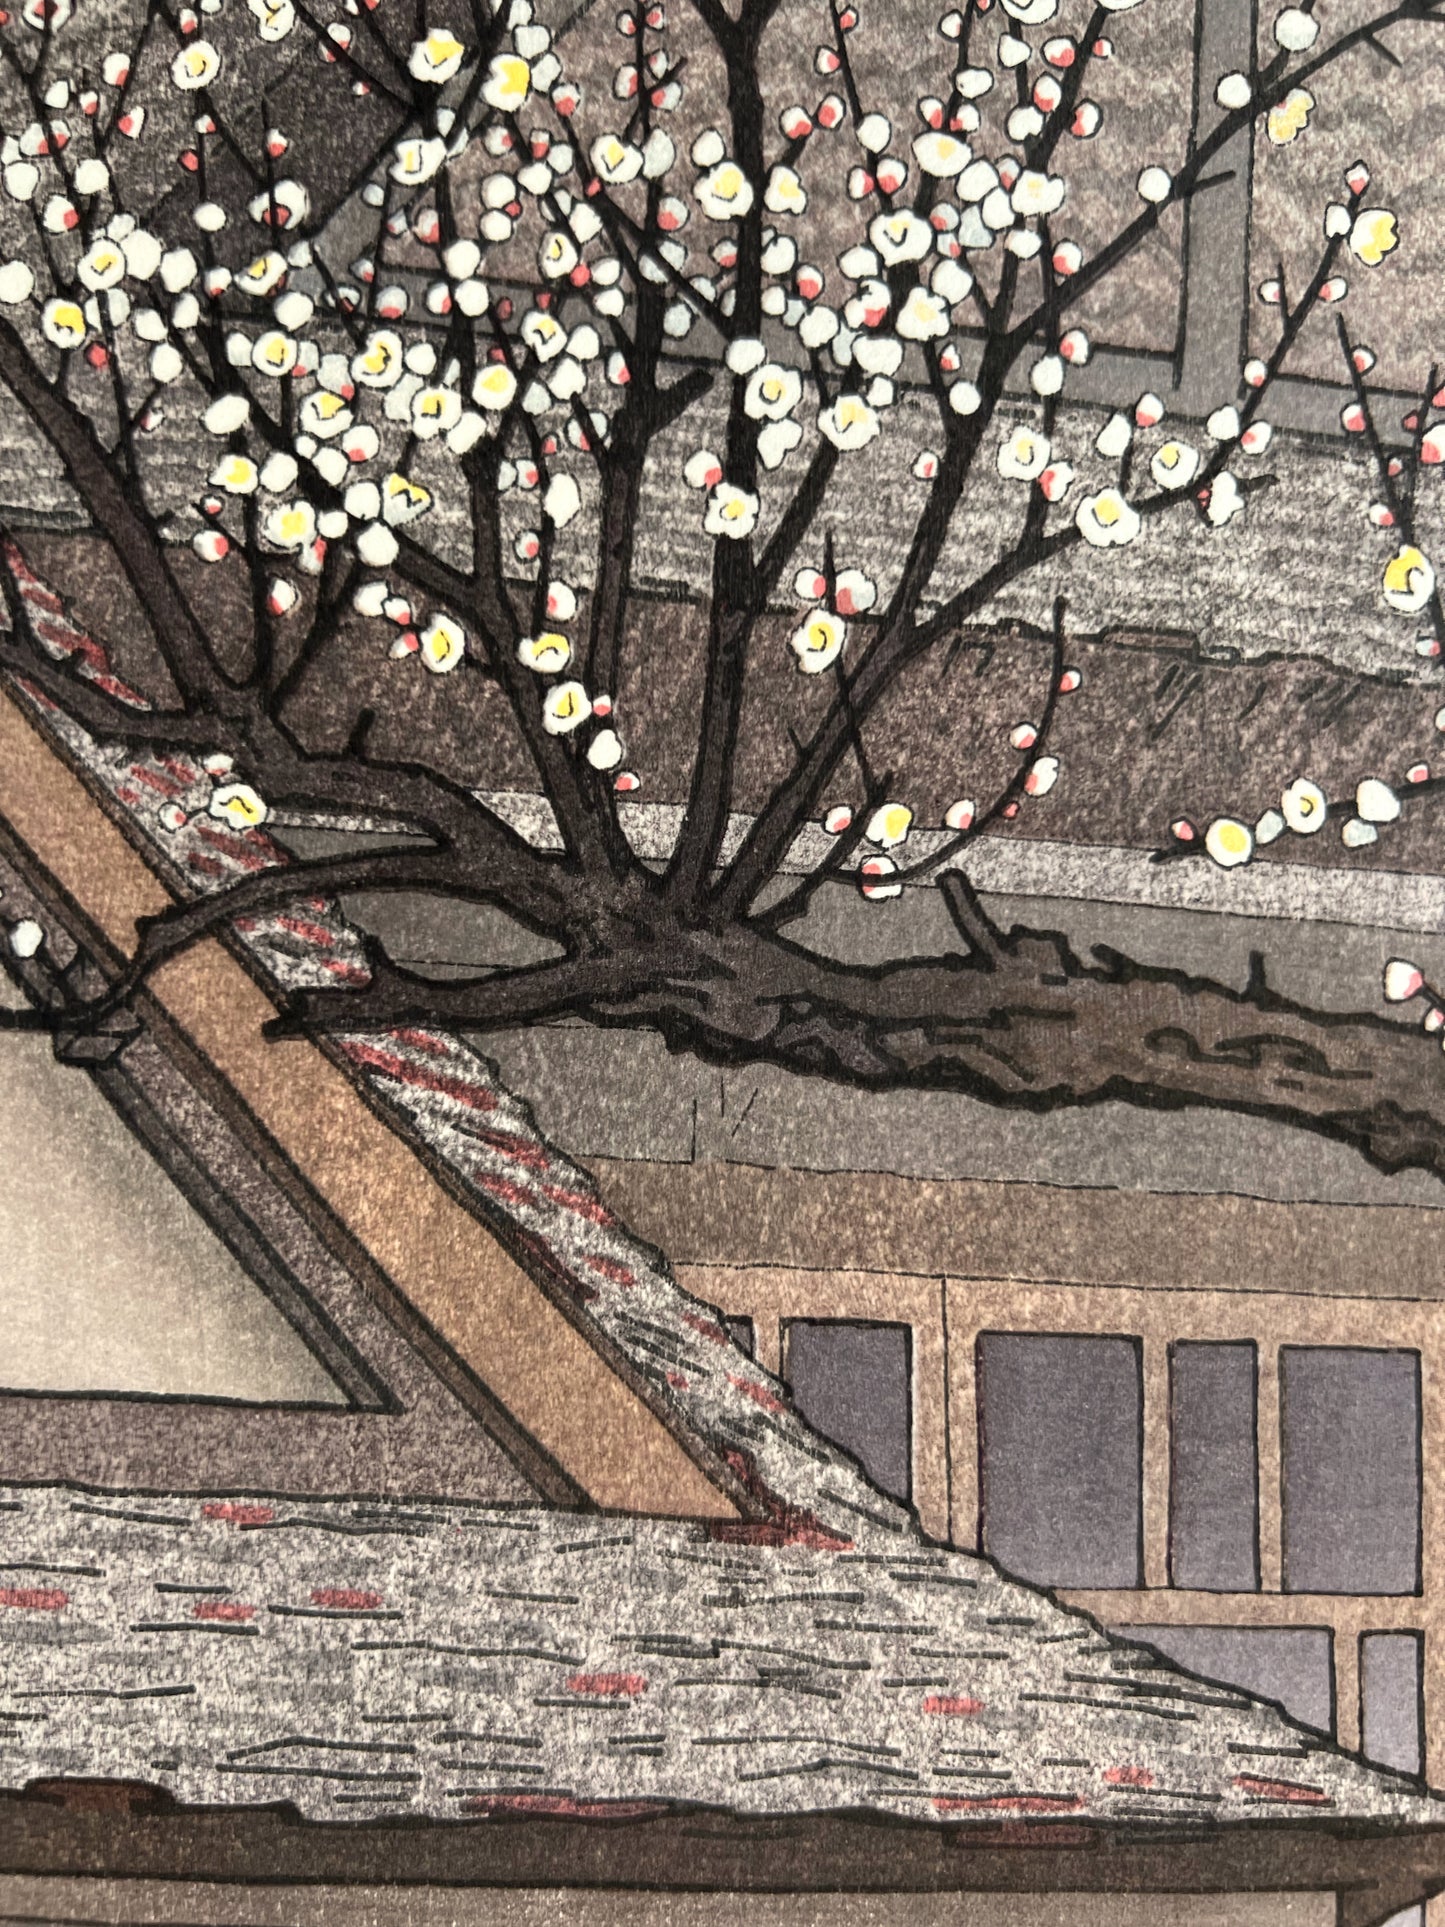 estampe japonaise prunier en fleurs au printemps devant un temple, gros plan sur les fleurs blanches de pruniers